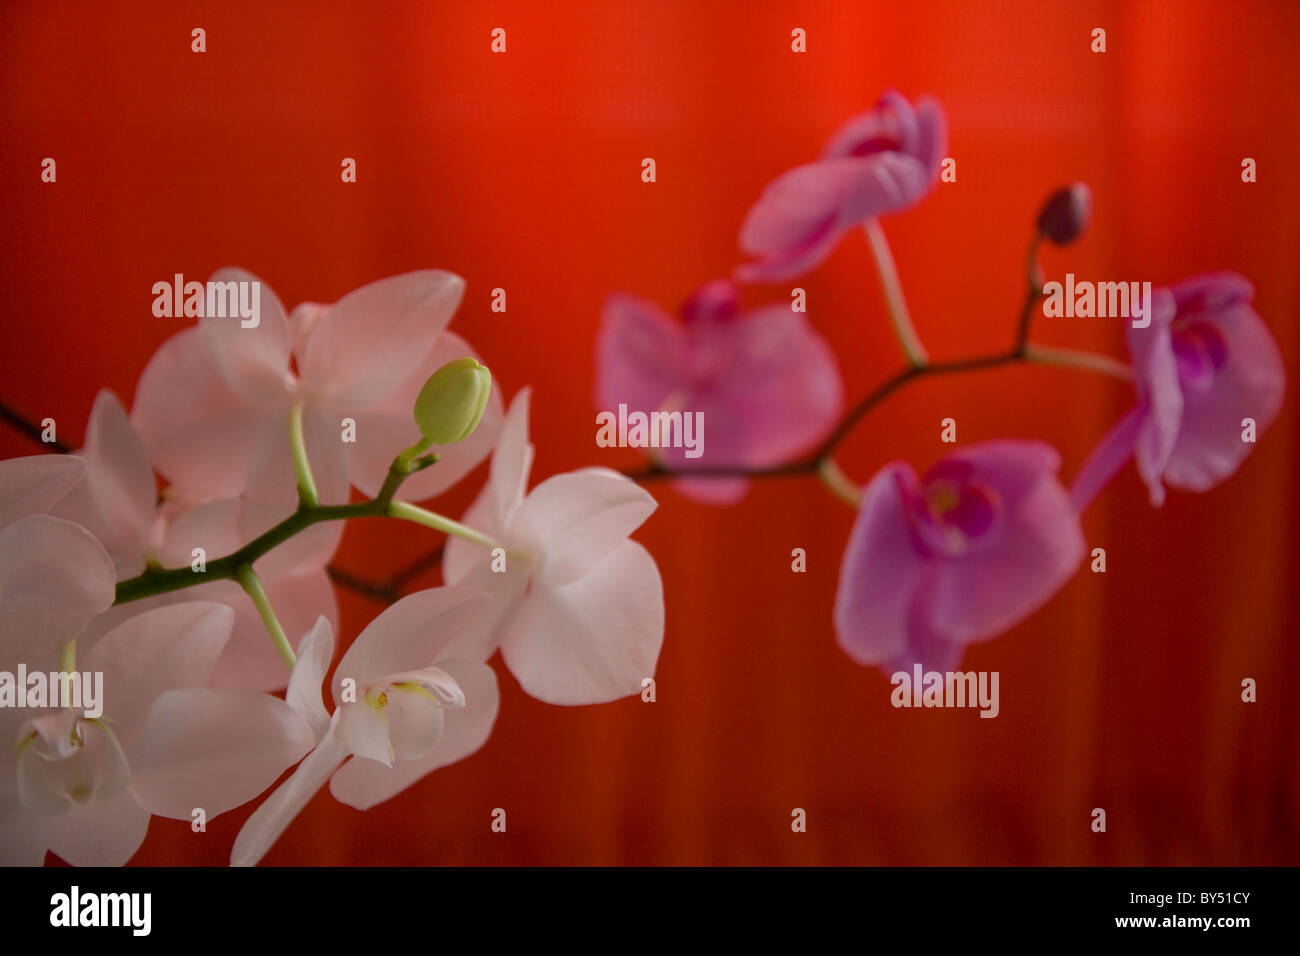 Bourgeons d'orchidées, white orchid, orchidée pourpre, fond orange, orchid blossoms, printemps Banque D'Images